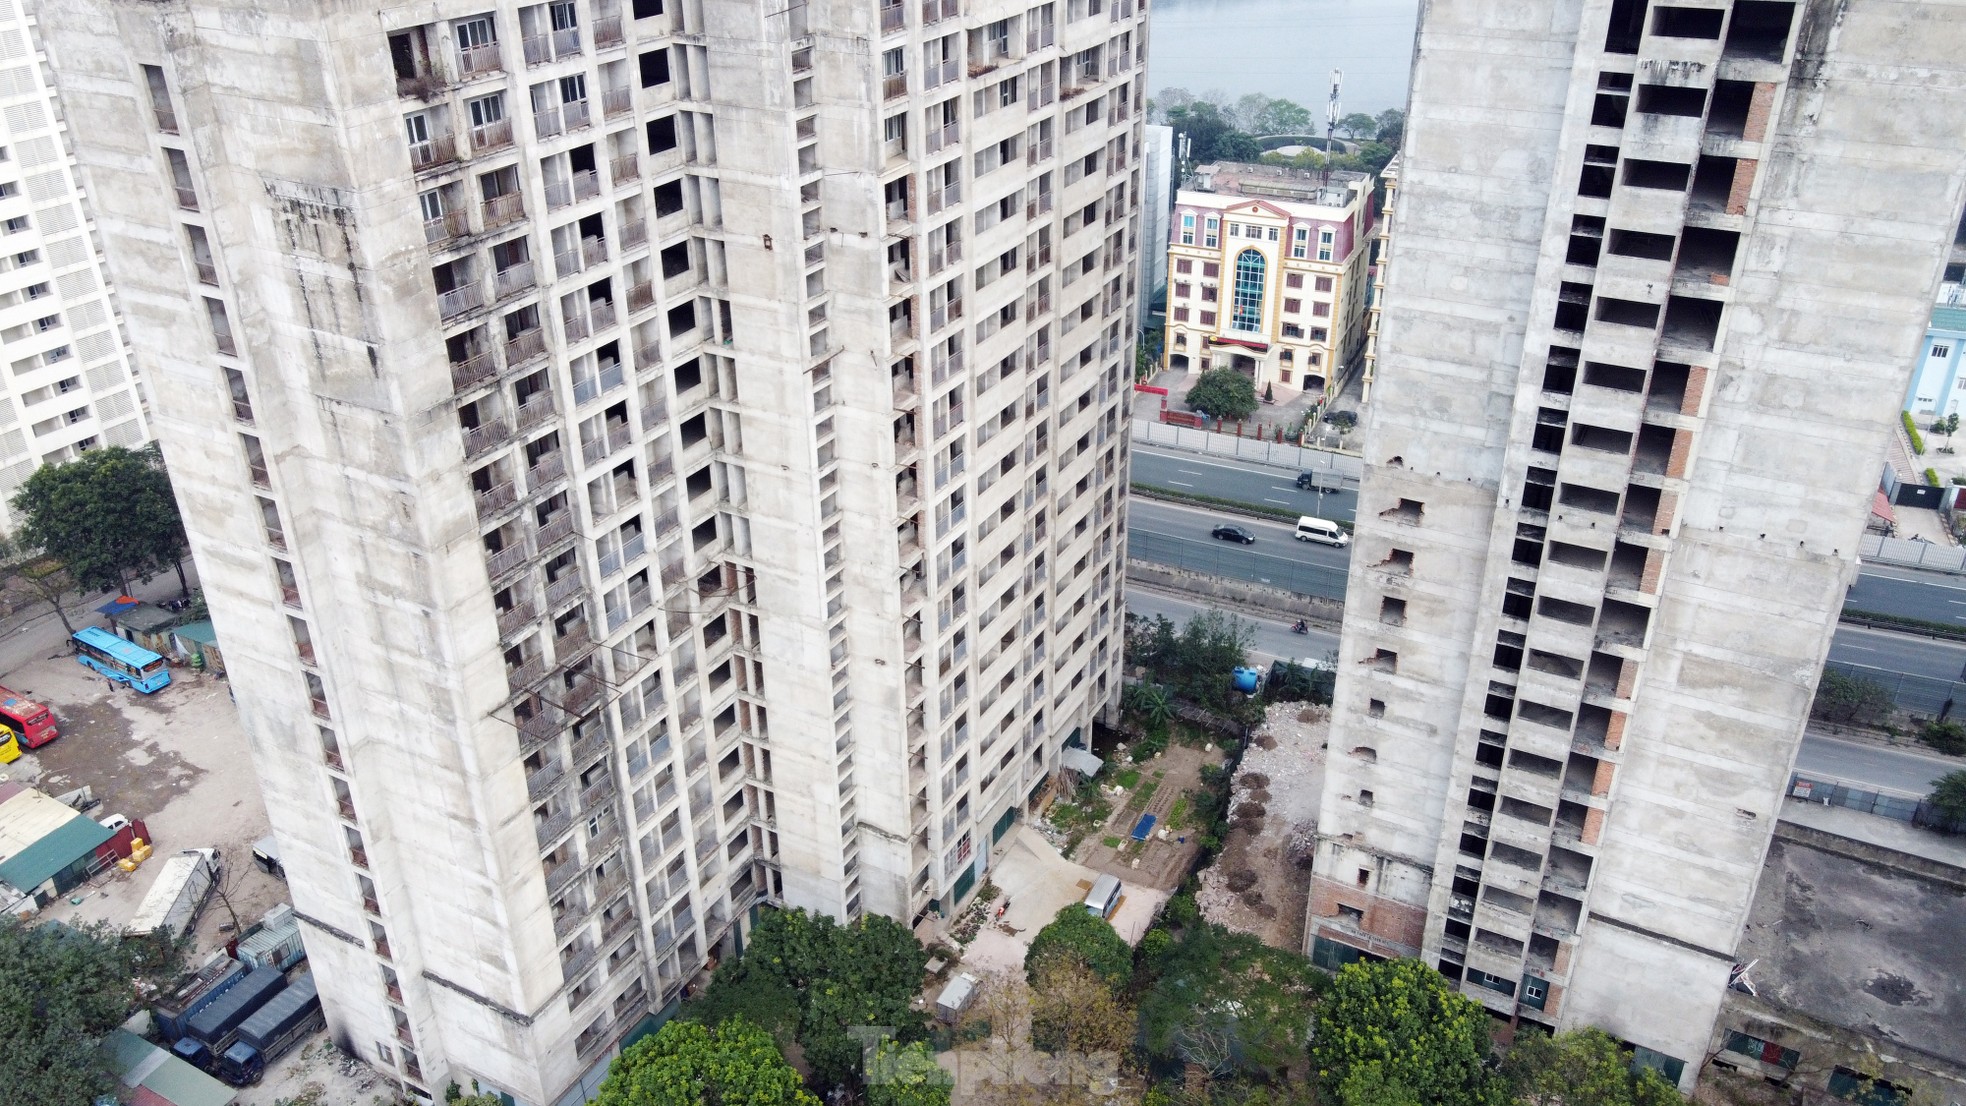 Khu ký túc xá 'nghìn tỷ' bỏ hoang sắp chuyển đổi làm nhà ở xã hội ở Hà Nội - Ảnh 12.